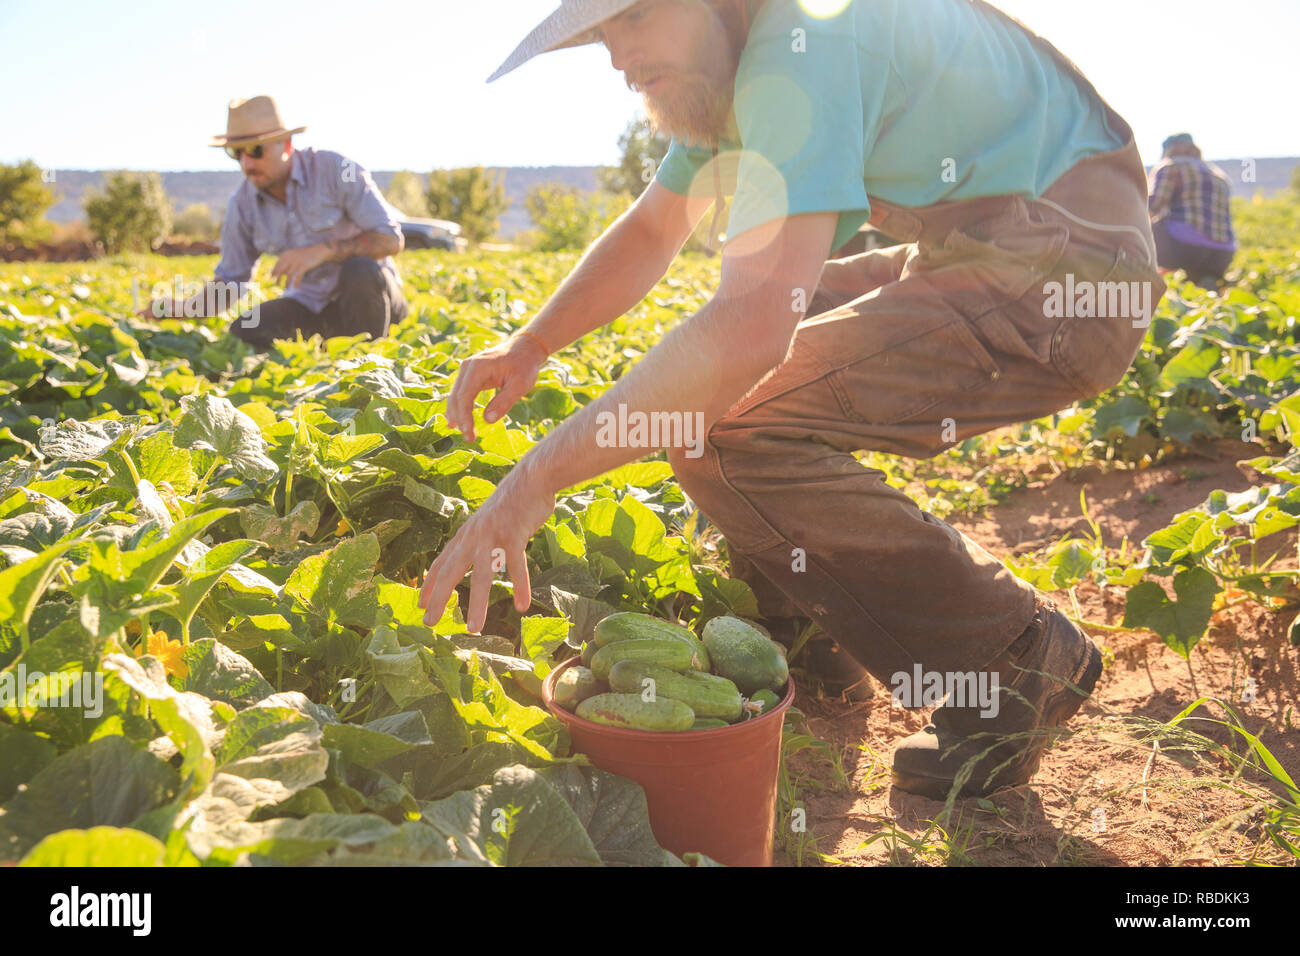 Bauern ernten Gemüse aus ökologischem Anbau, während Knien in der Bauernhof Feld Stockfoto